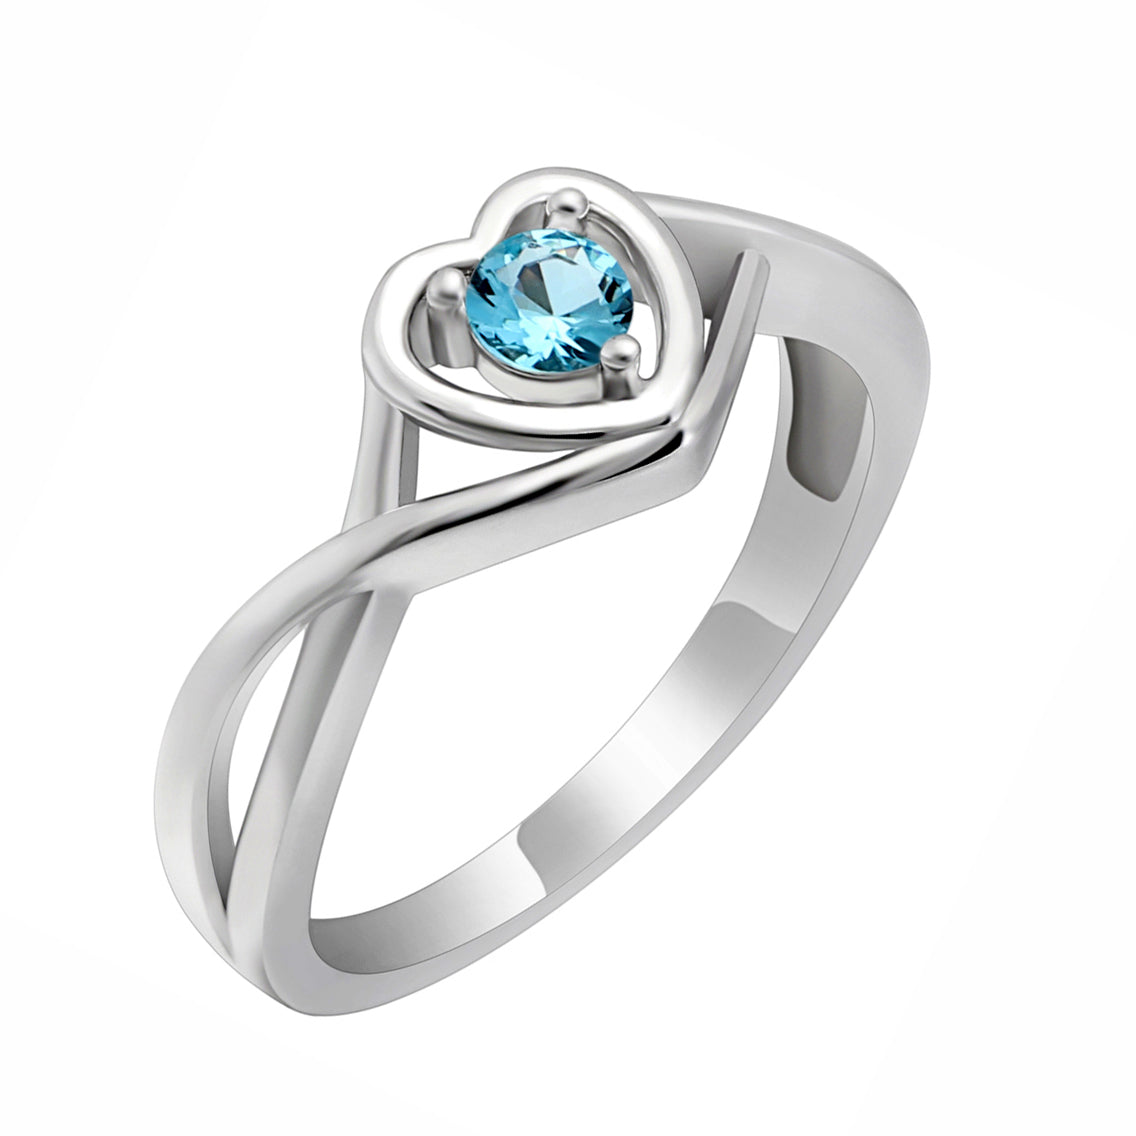 Christine Promise Ring Heart Engagement Women Silver Cz Ginger Lyne - March Light Blue,11